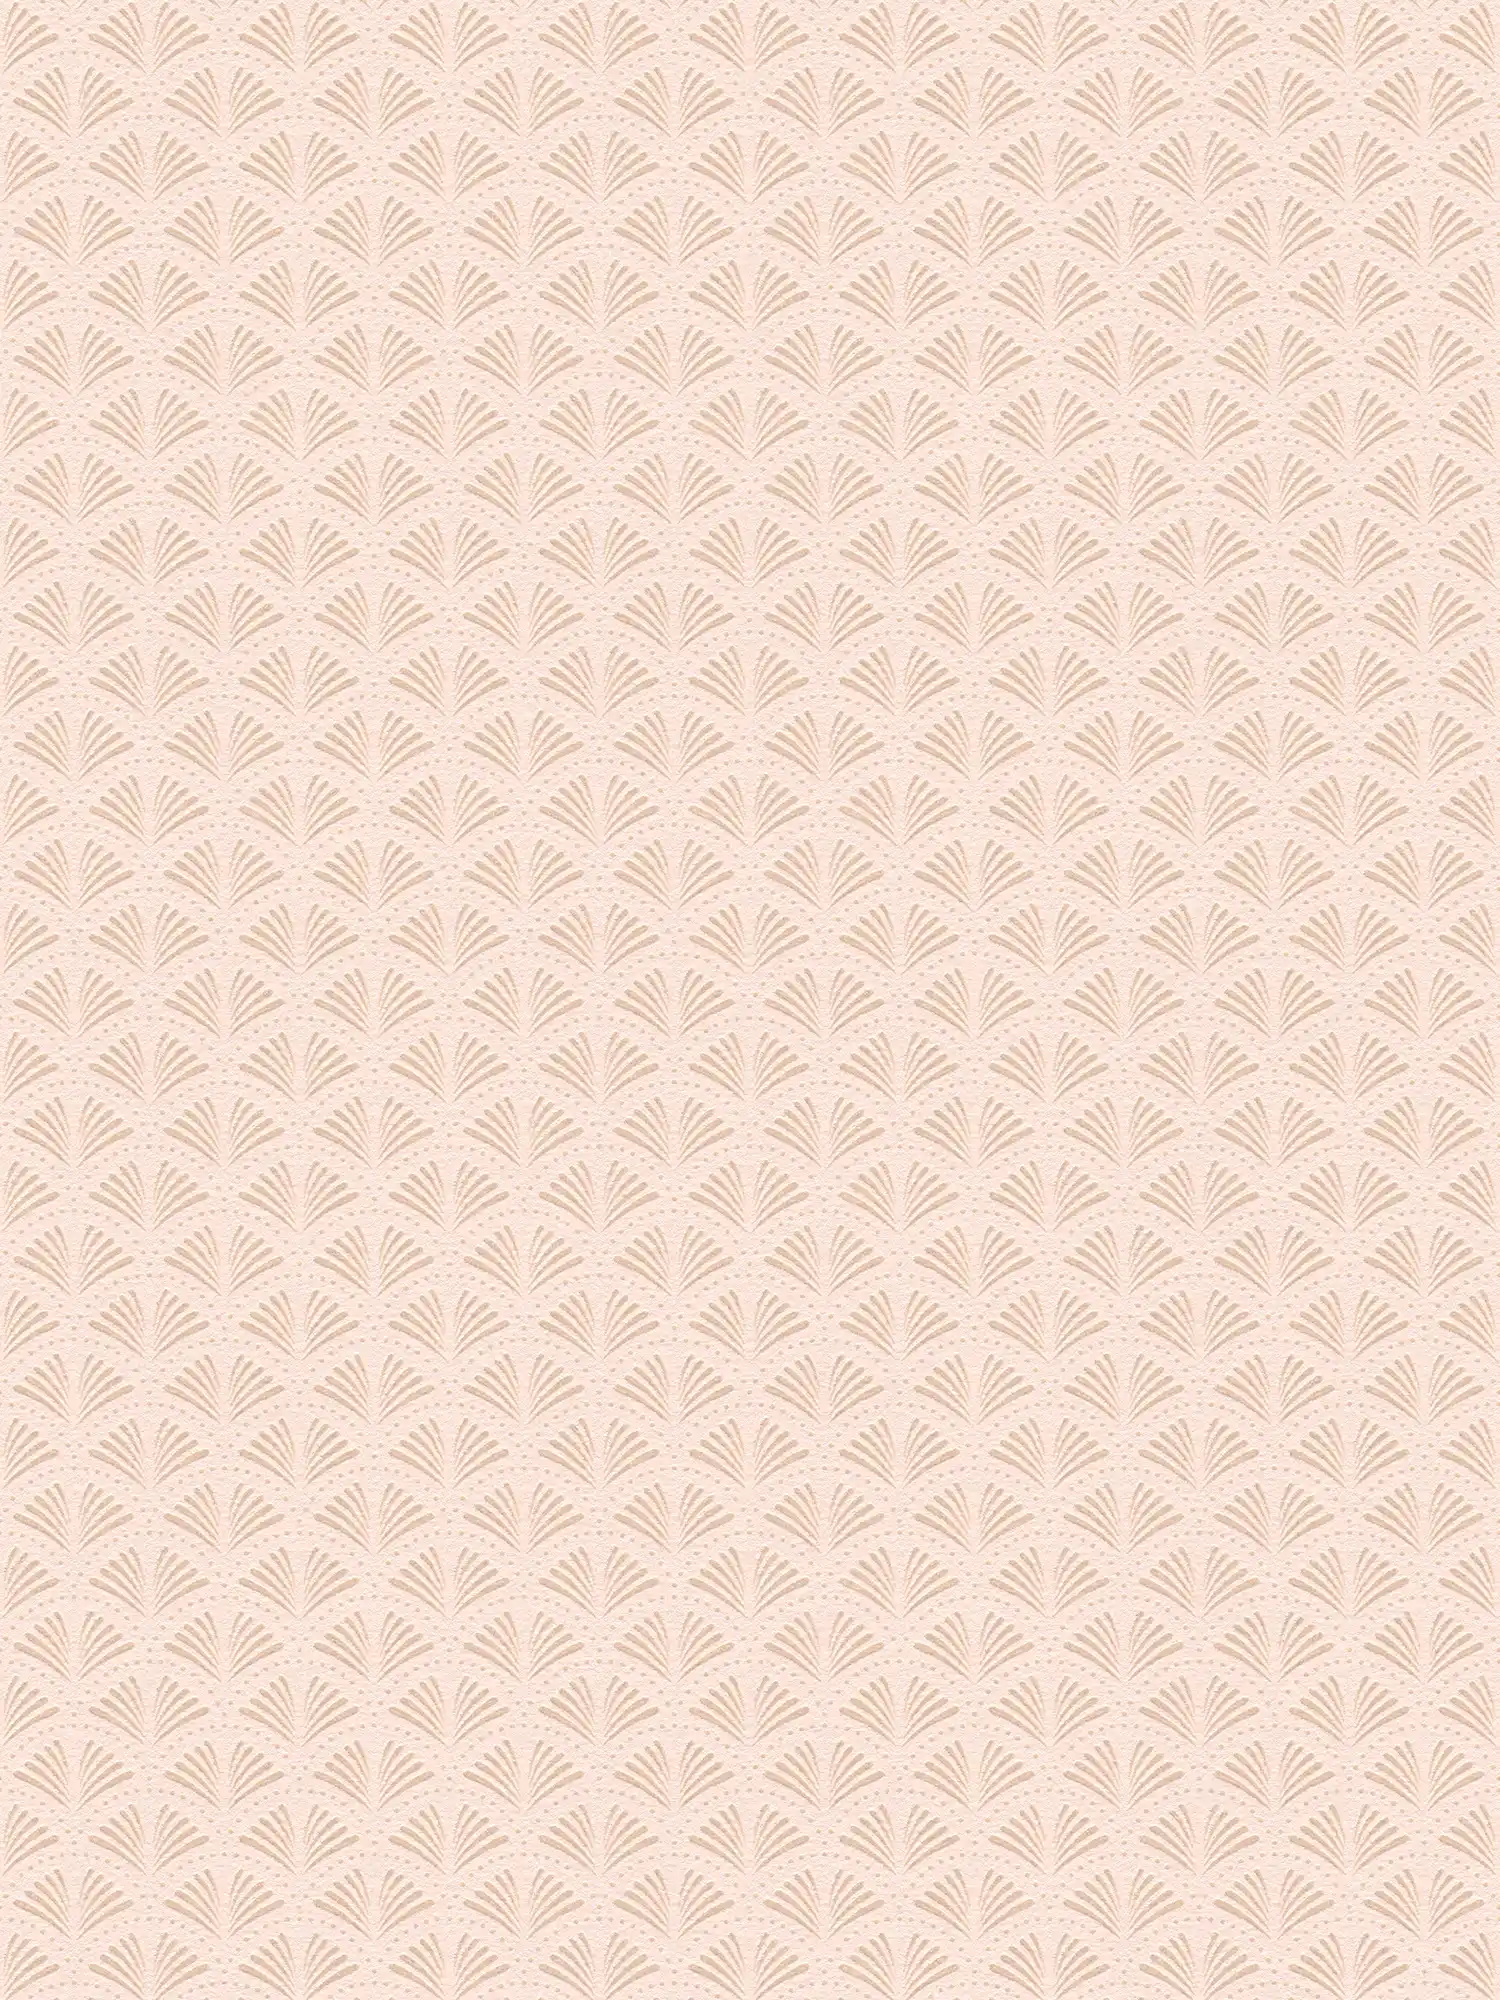 Roze vliesbehang met structuur & metallic patroon - crème, metallic, roze
